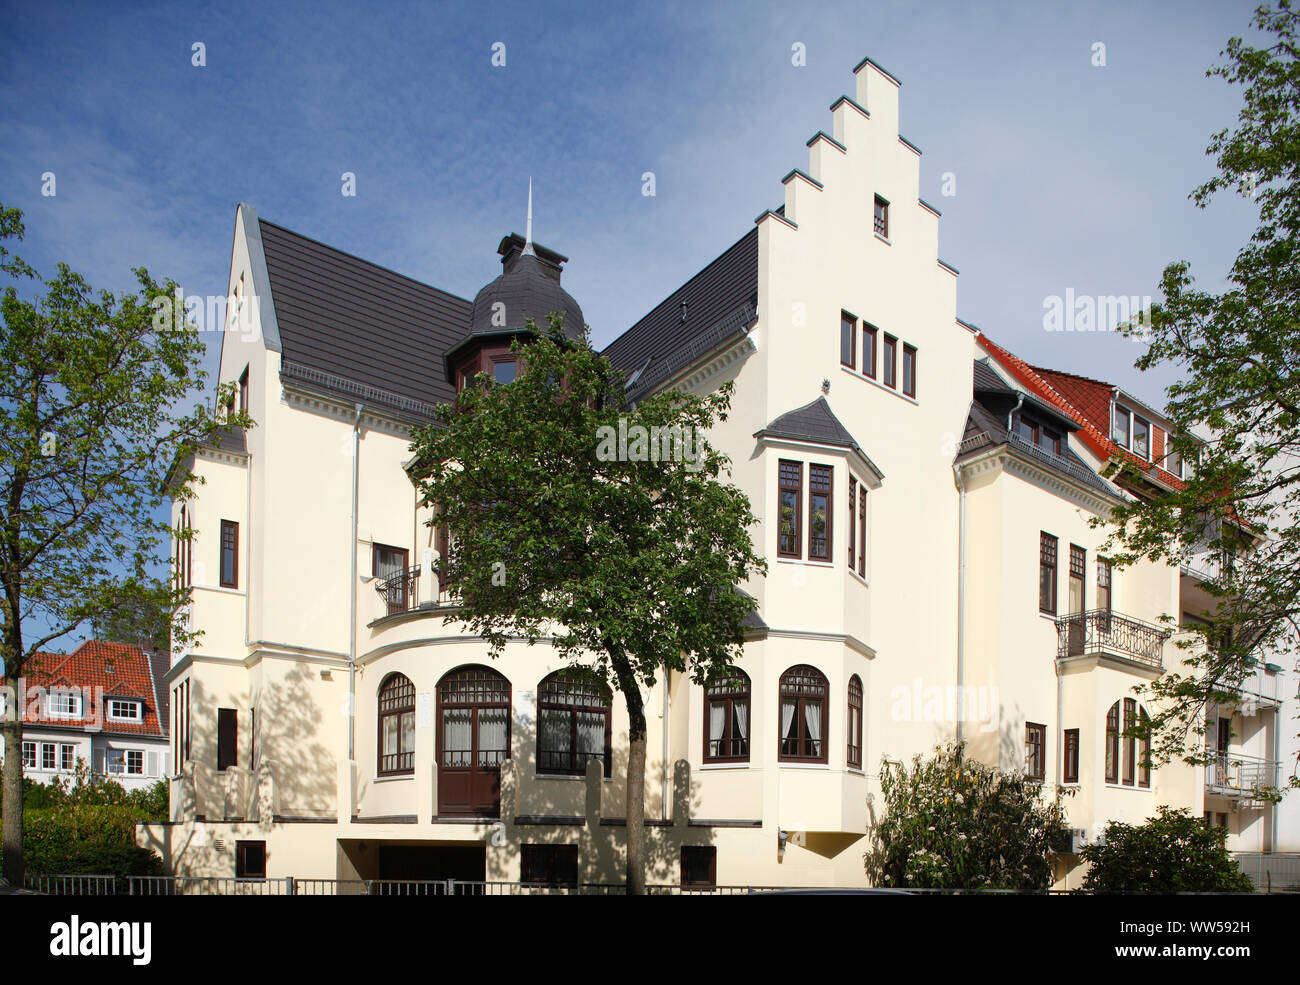 GrÃ¼nderzeit Villa in Schwachhausen, Bremen, Germany, Europe Stock Photo